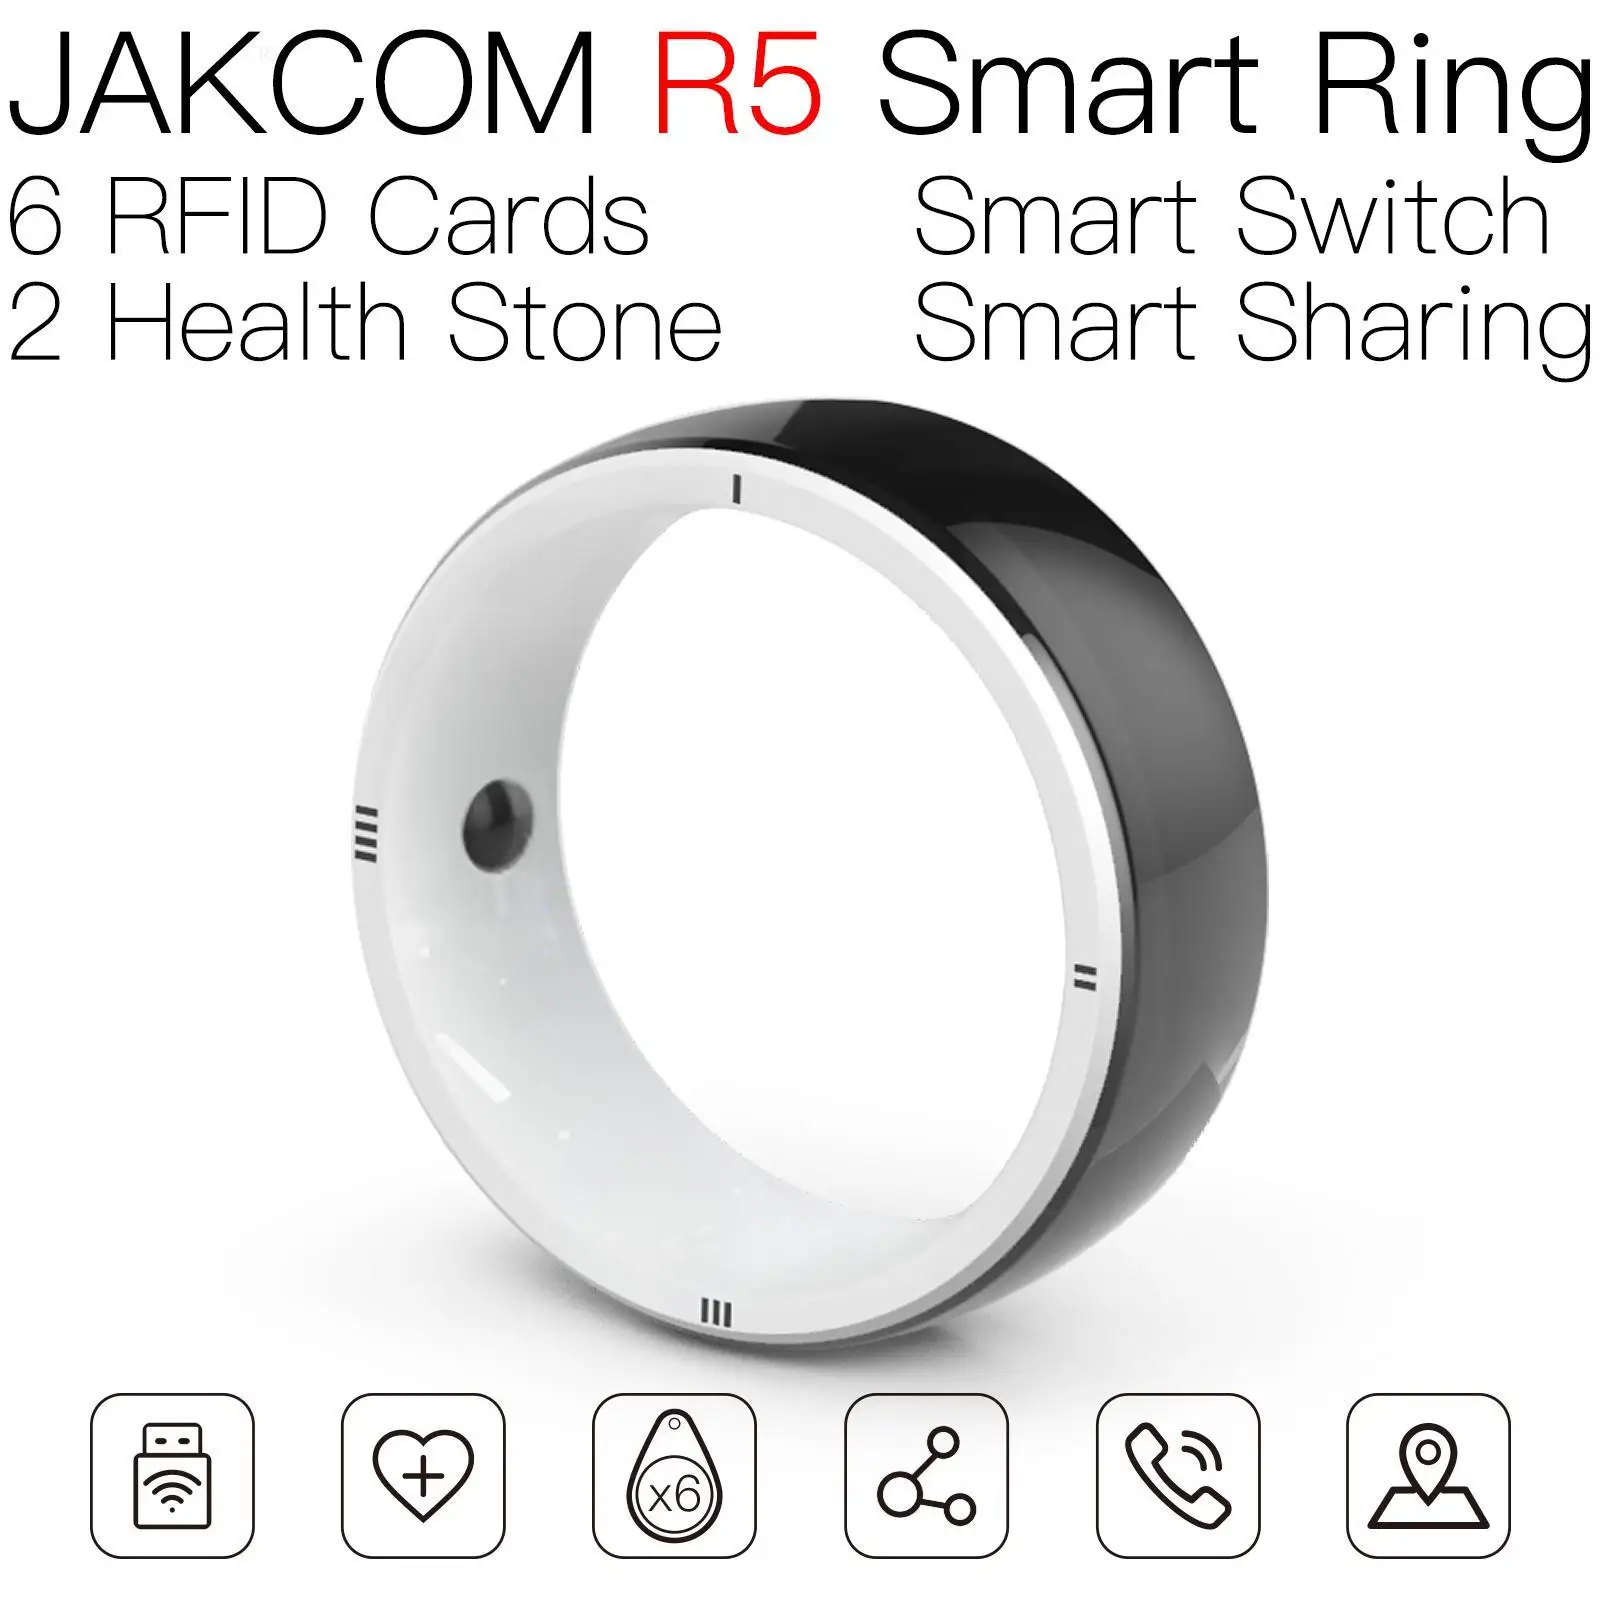 

Умное кольцо JAKCOM R5, новый продукт, идентификационная бирка для домашних животных, 125 кГц, браслет rfid realme, Официальный магазин, paypal, стандартная наклейка для мобильного телефона